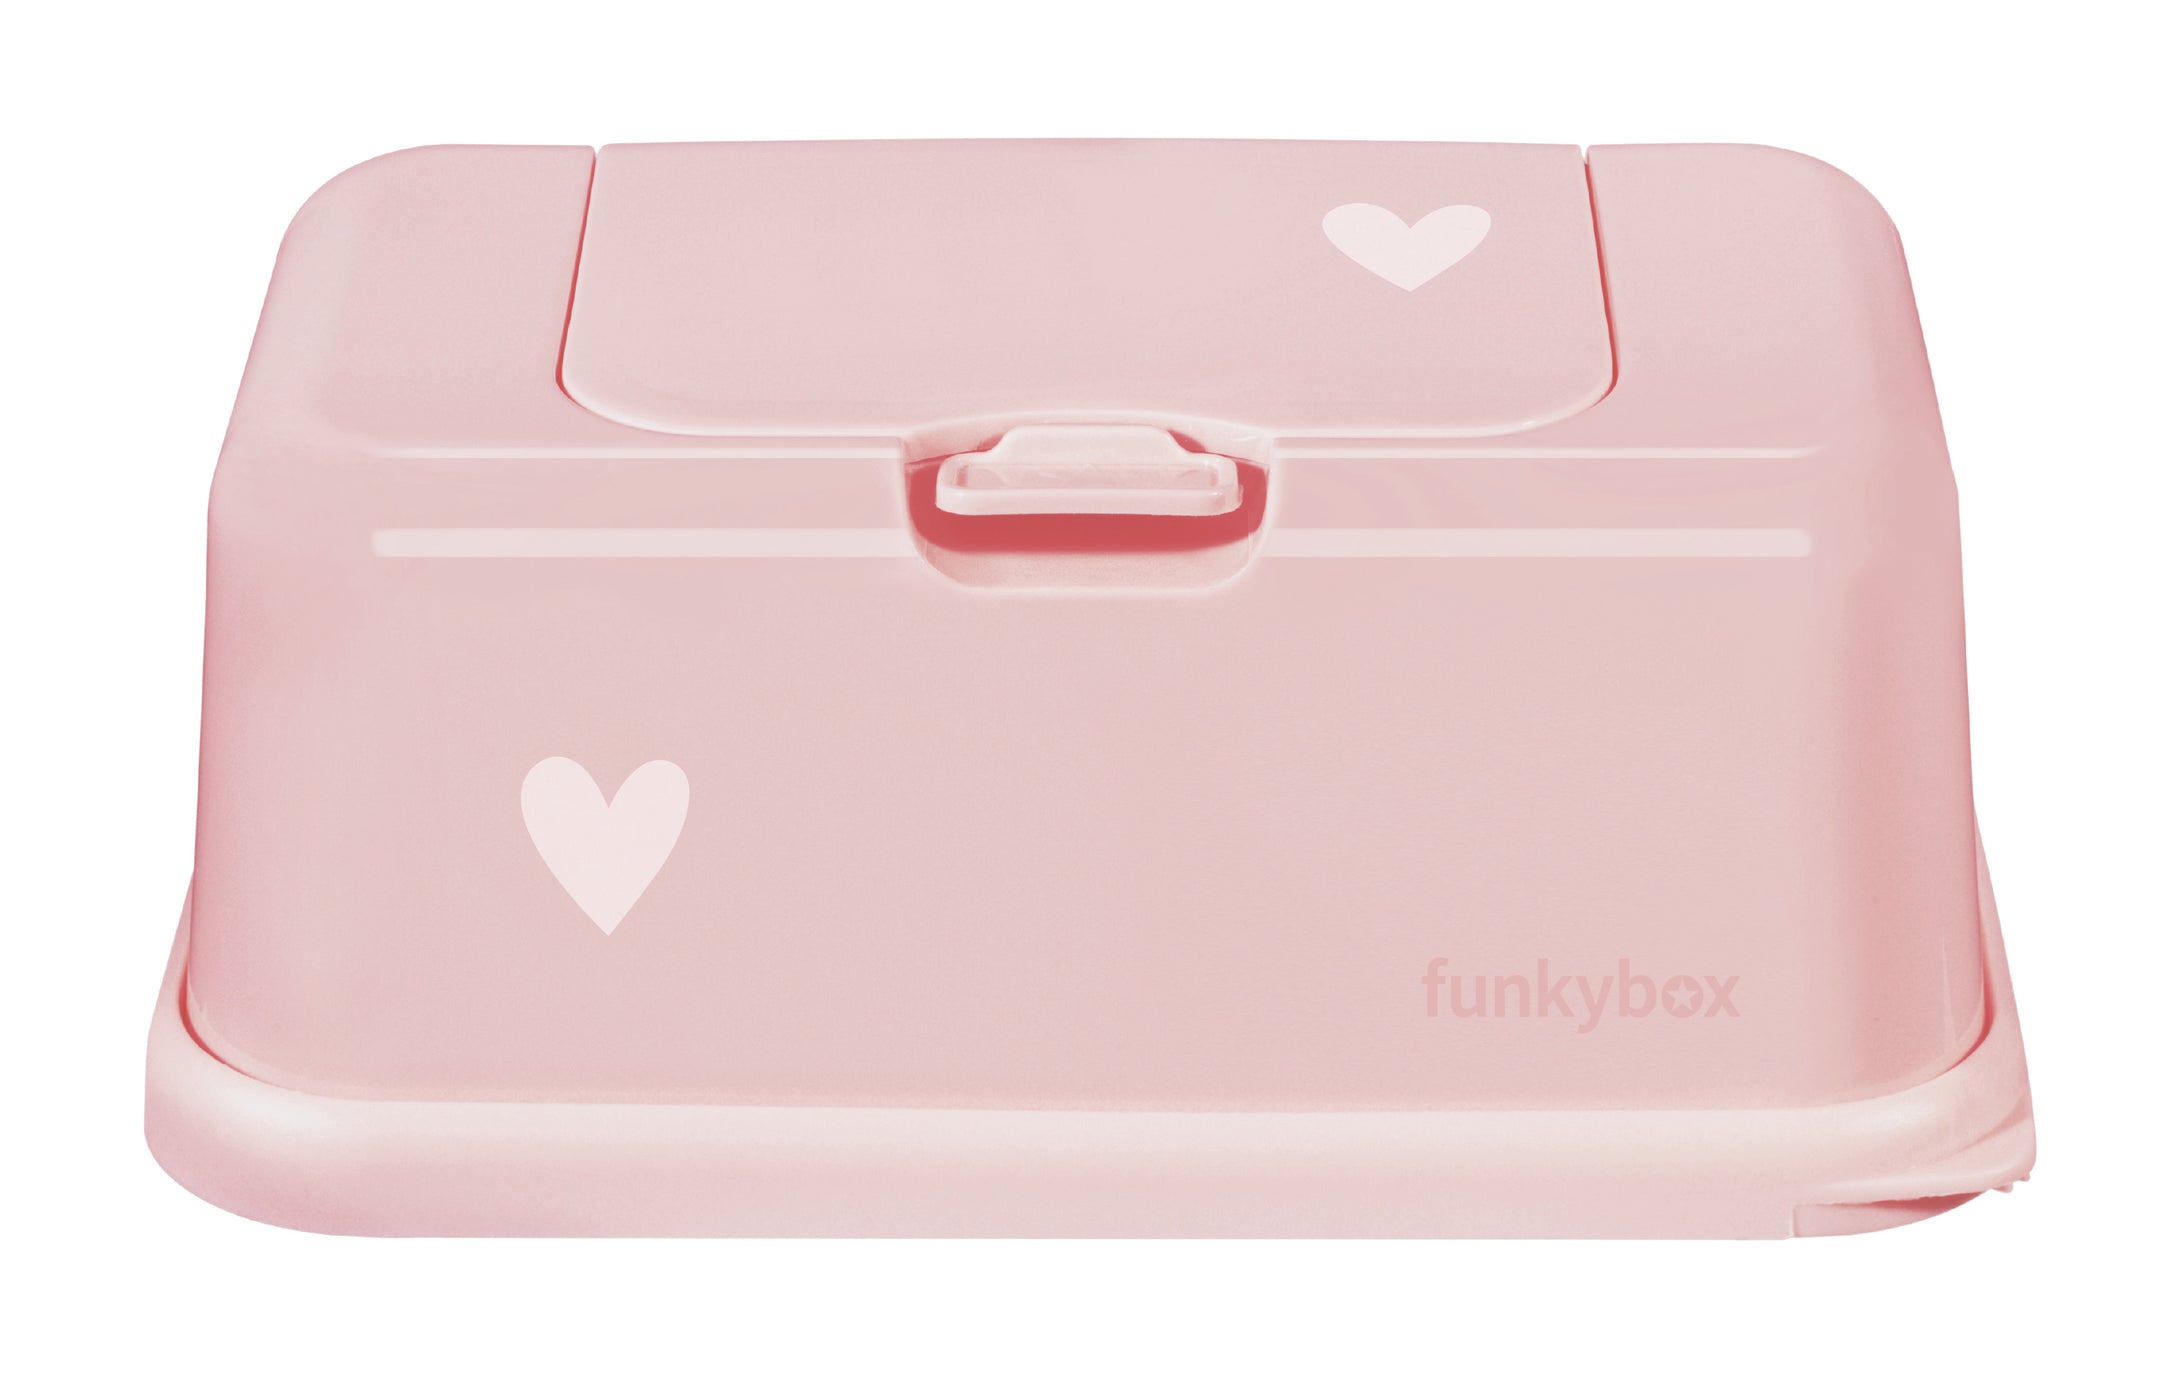 Funkybox - Feuchttücher Box Kleine Herzen rosa